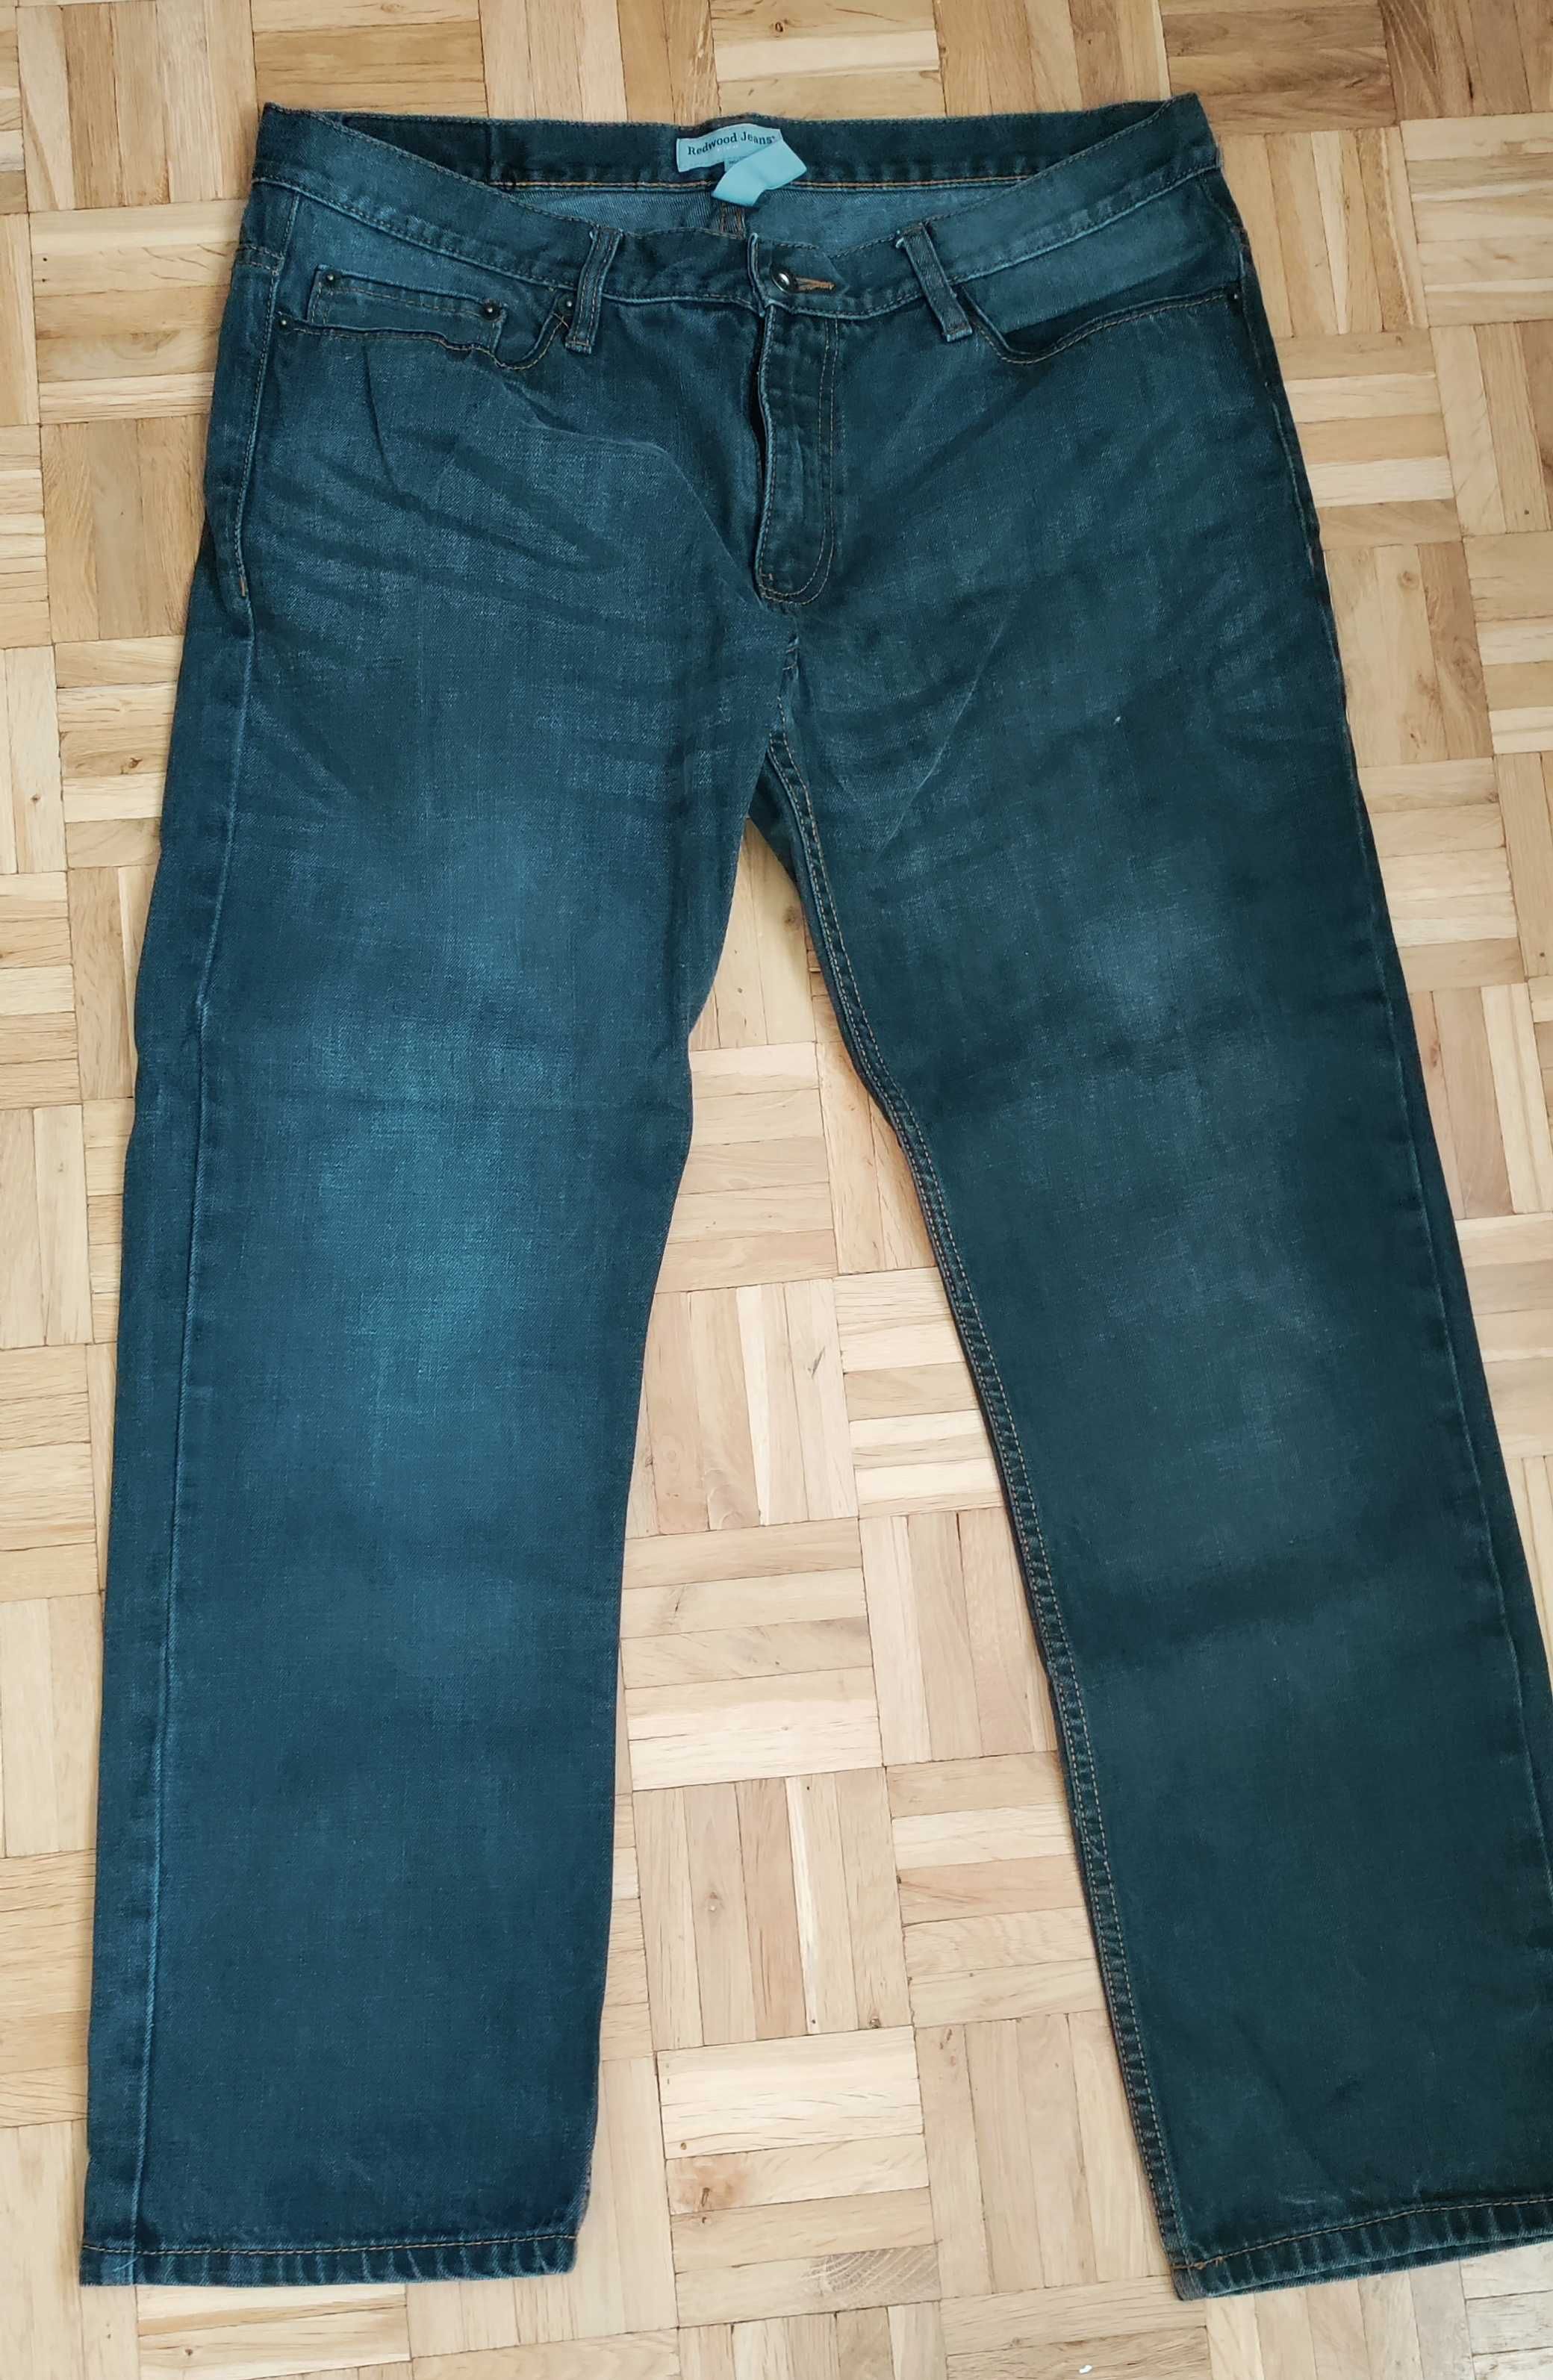 Spodnie jeansy dżinsy męskie 36/30 pas 95 cm straight fit